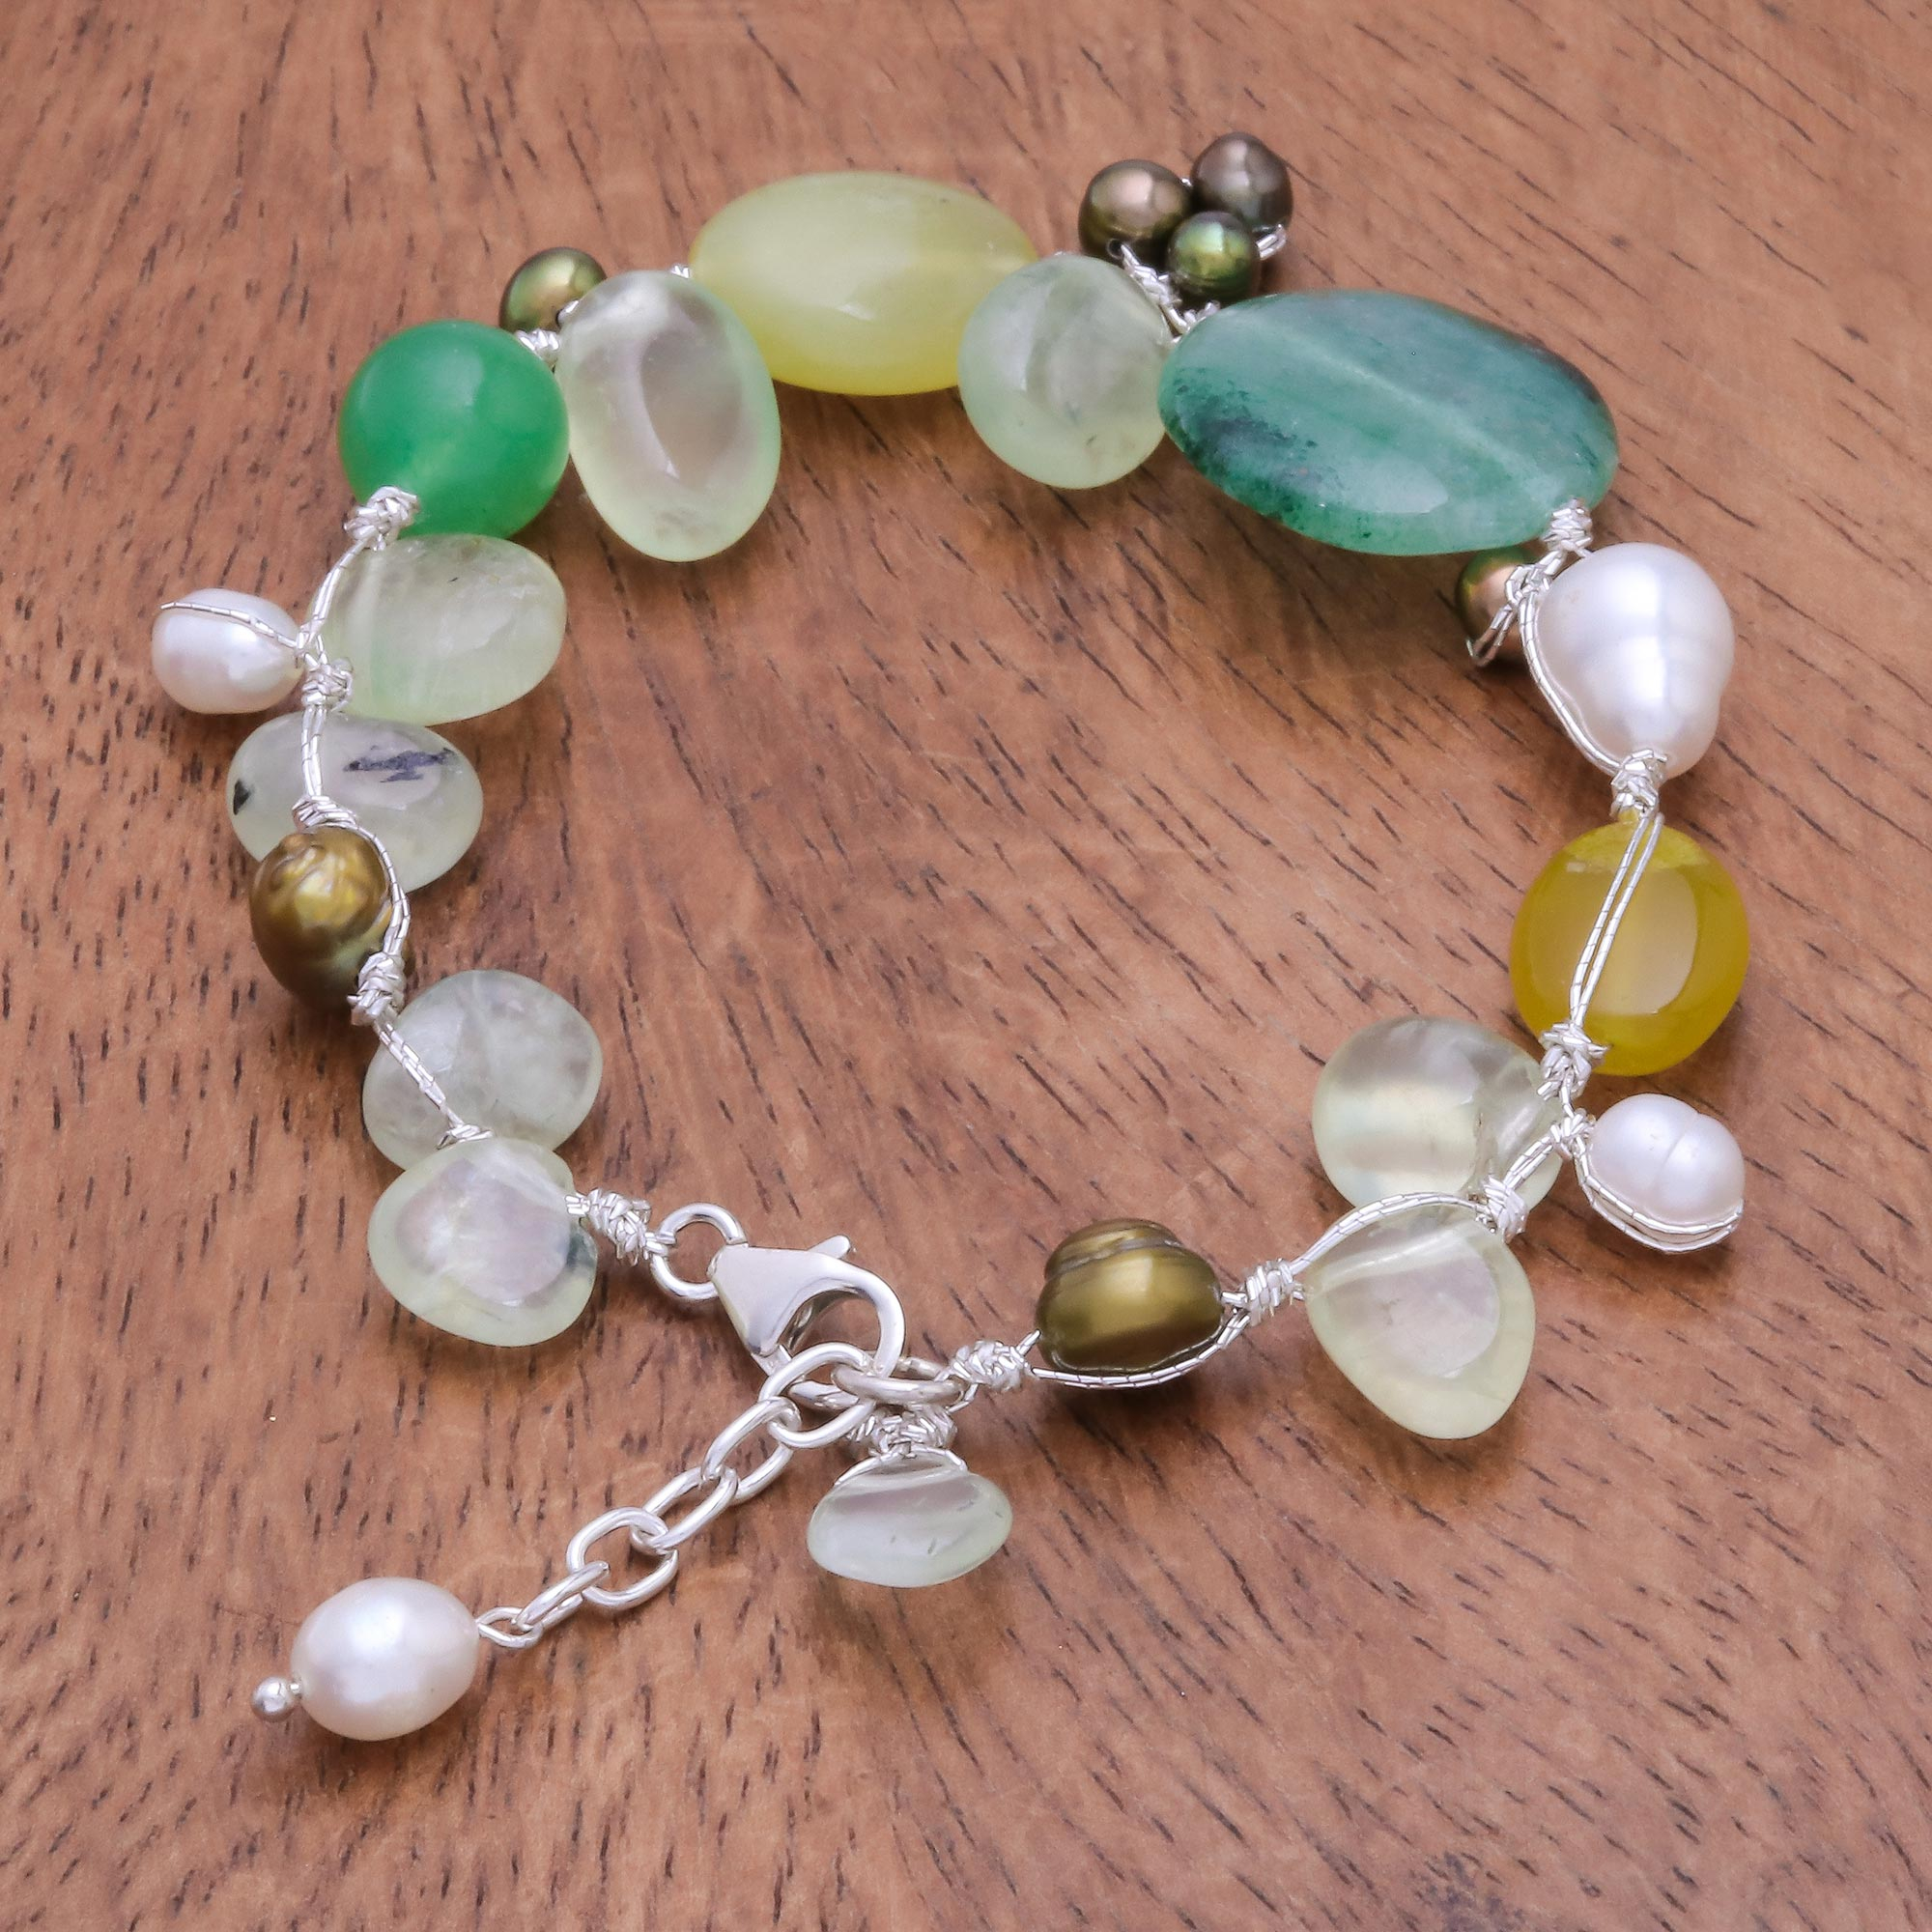 Beaded Gemstone Bracelet from Thailand - Green Apples | NOVICA